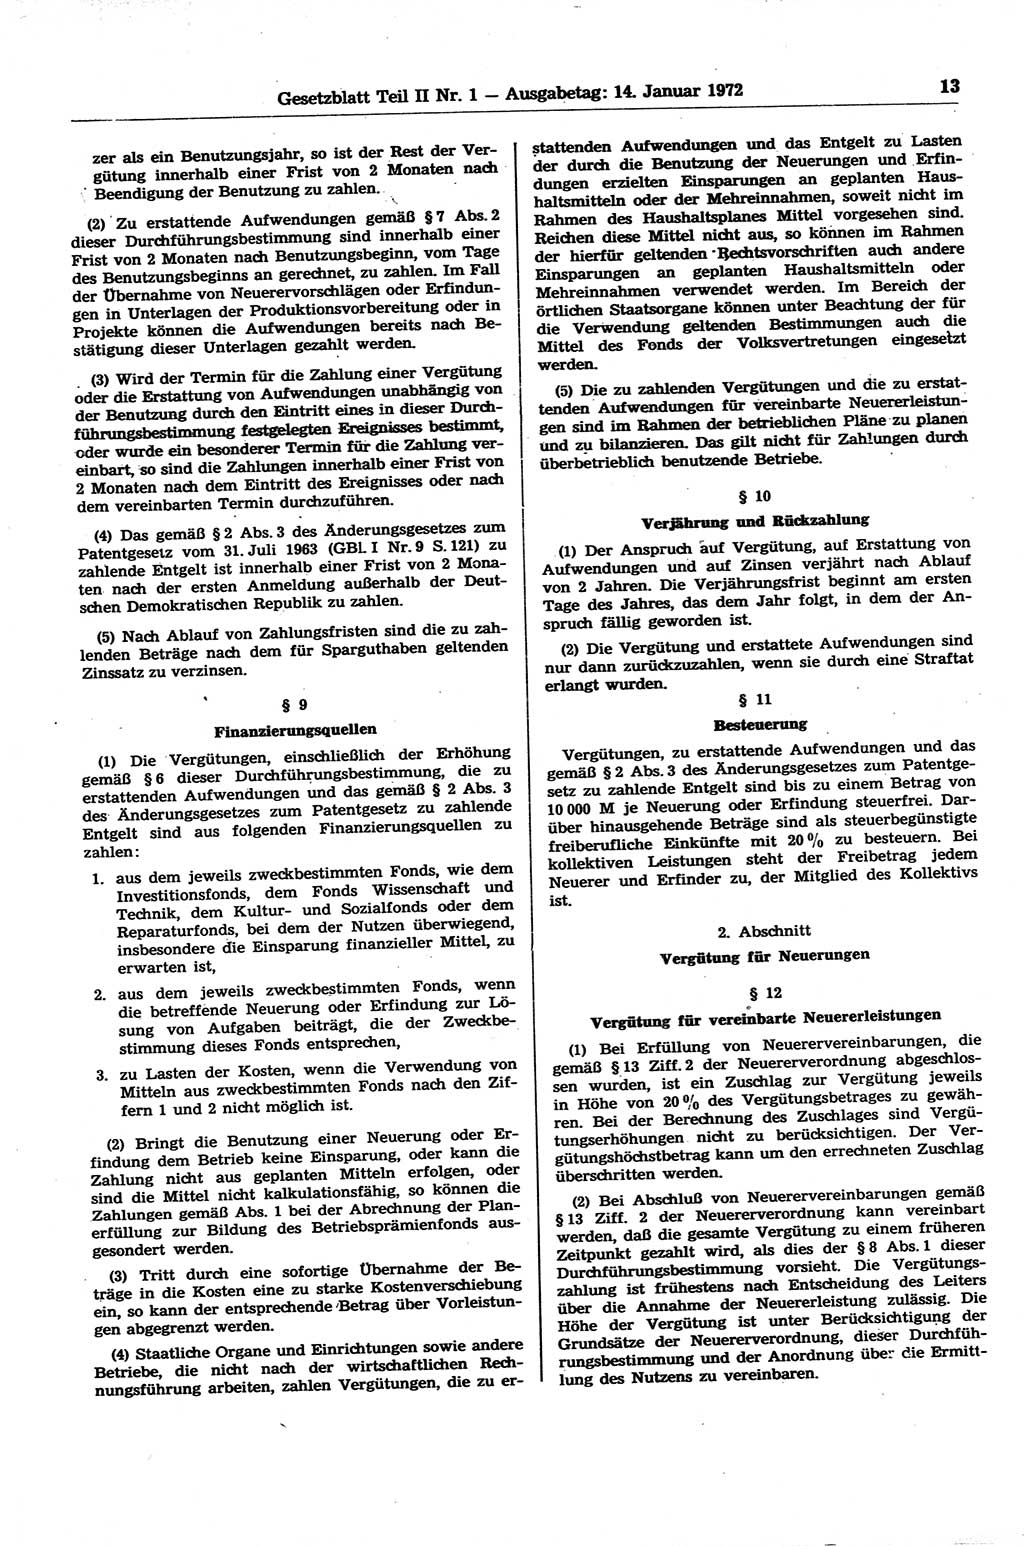 Gesetzblatt (GBl.) der Deutschen Demokratischen Republik (DDR) Teil ⅠⅠ 1972, Seite 13 (GBl. DDR ⅠⅠ 1972, S. 13)